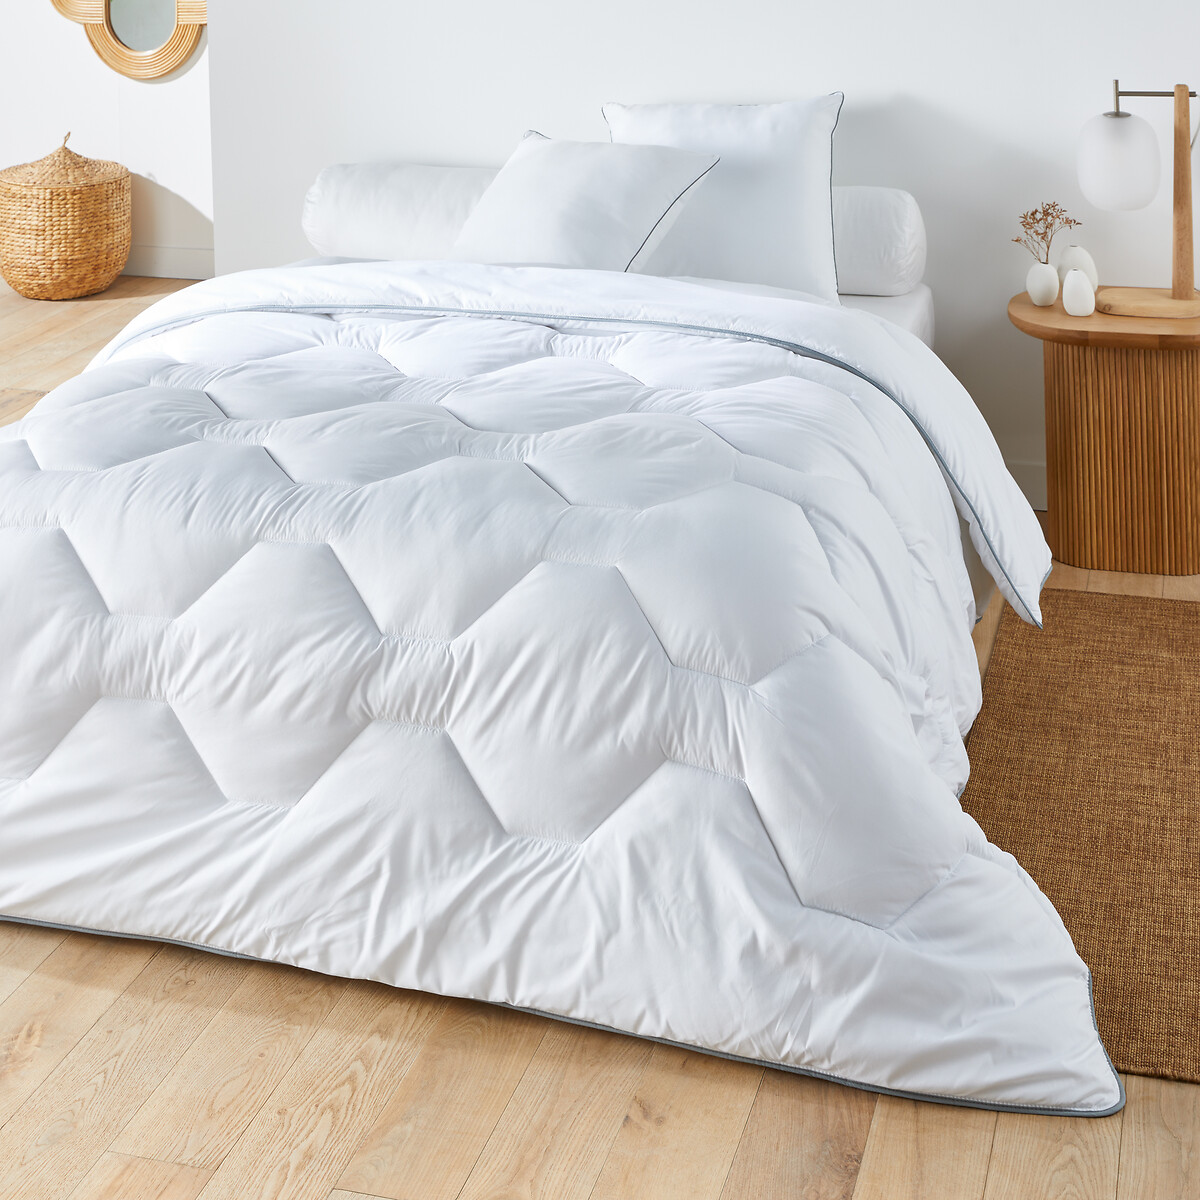 Одеяло из синтетического материала для прохладных помещений Confort htel  140 x 200 см белый LaRedoute, размер 140 x 200 см - фото 1